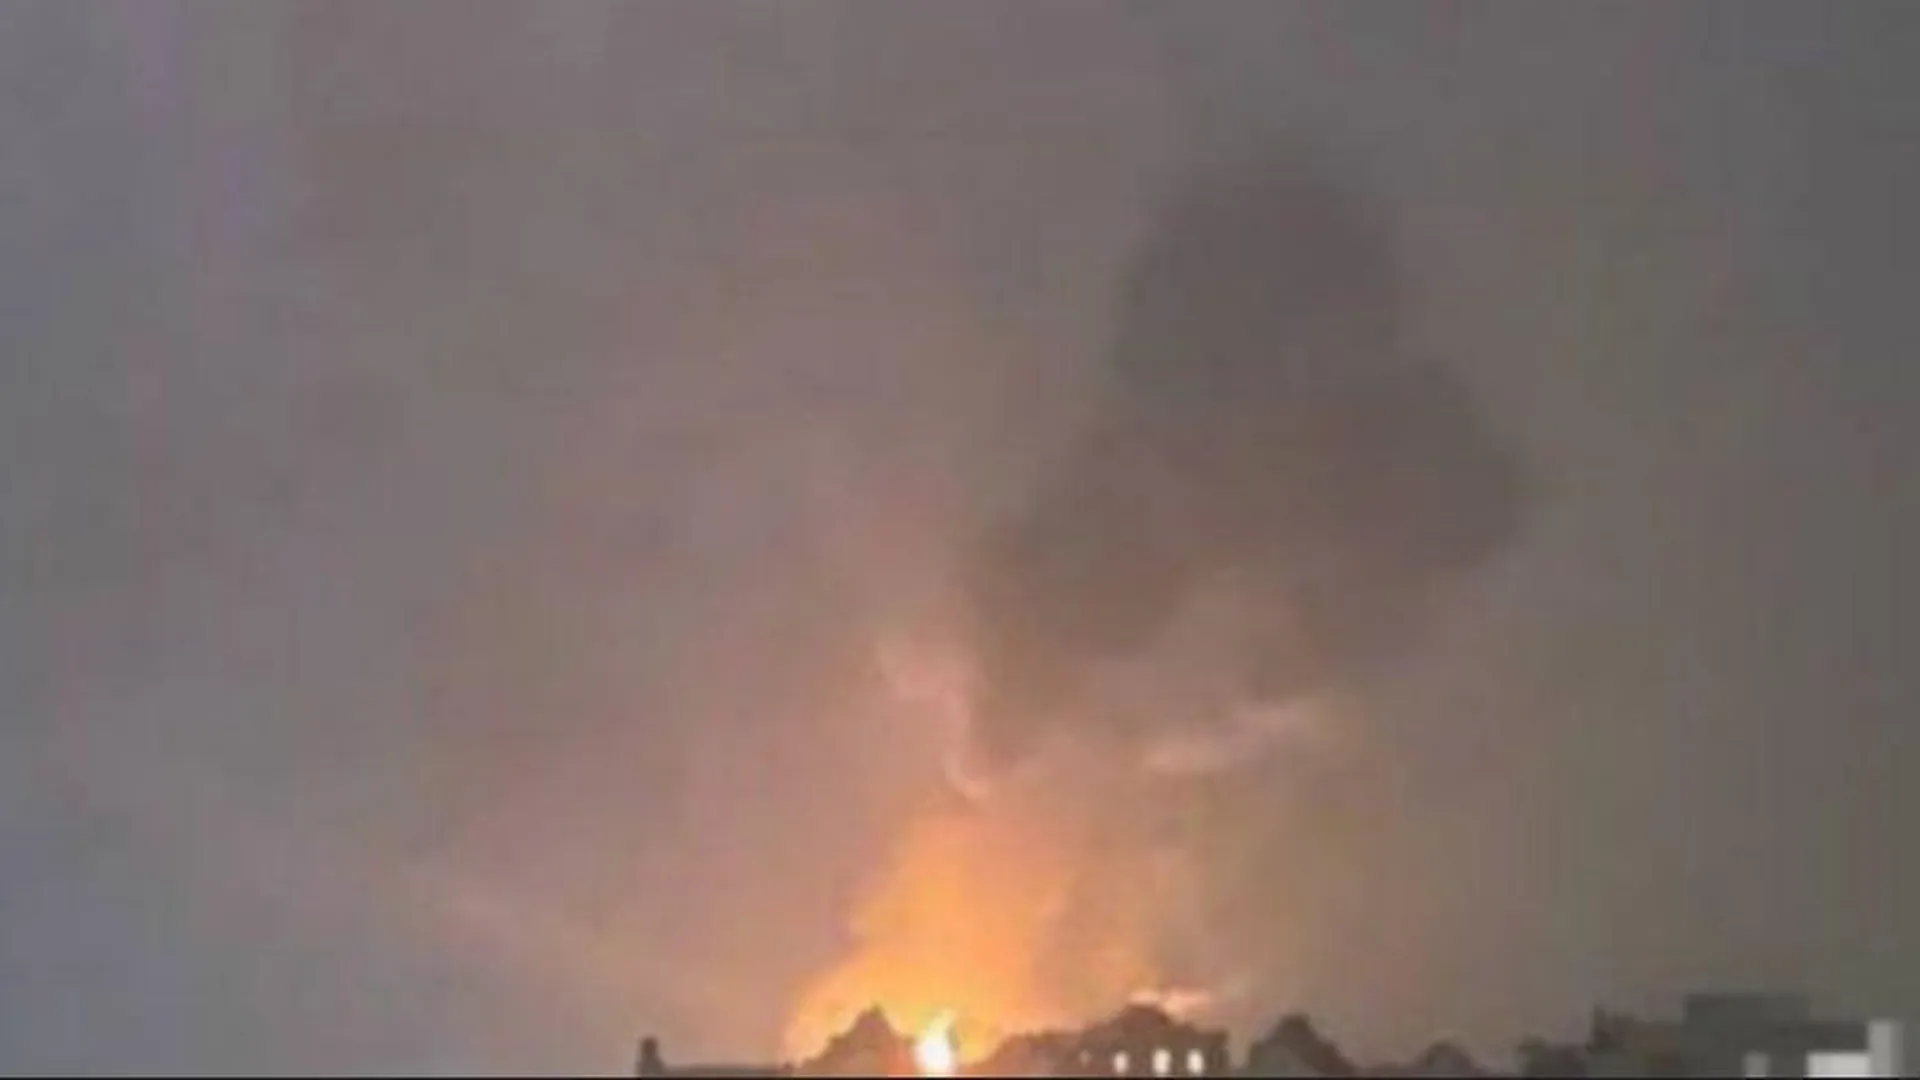 Shot передает о взрывах в районе нефтебазы под Смоленском, видно сильное зарево и дым